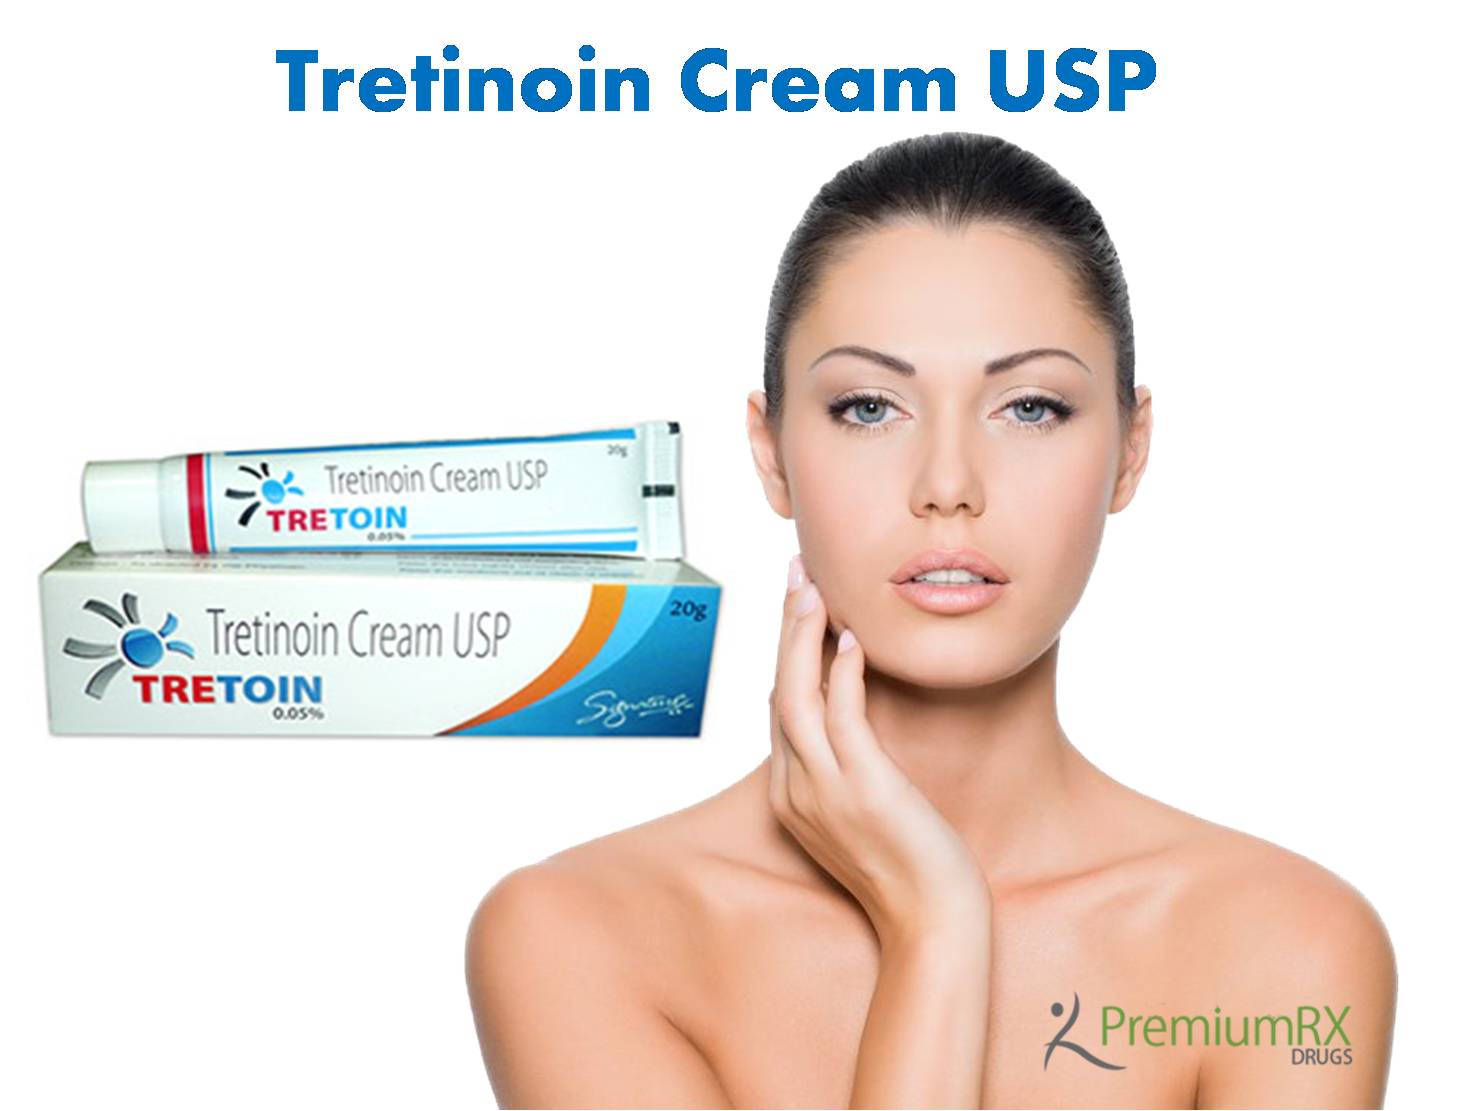 Where to Buy Tretinoin Cream USP